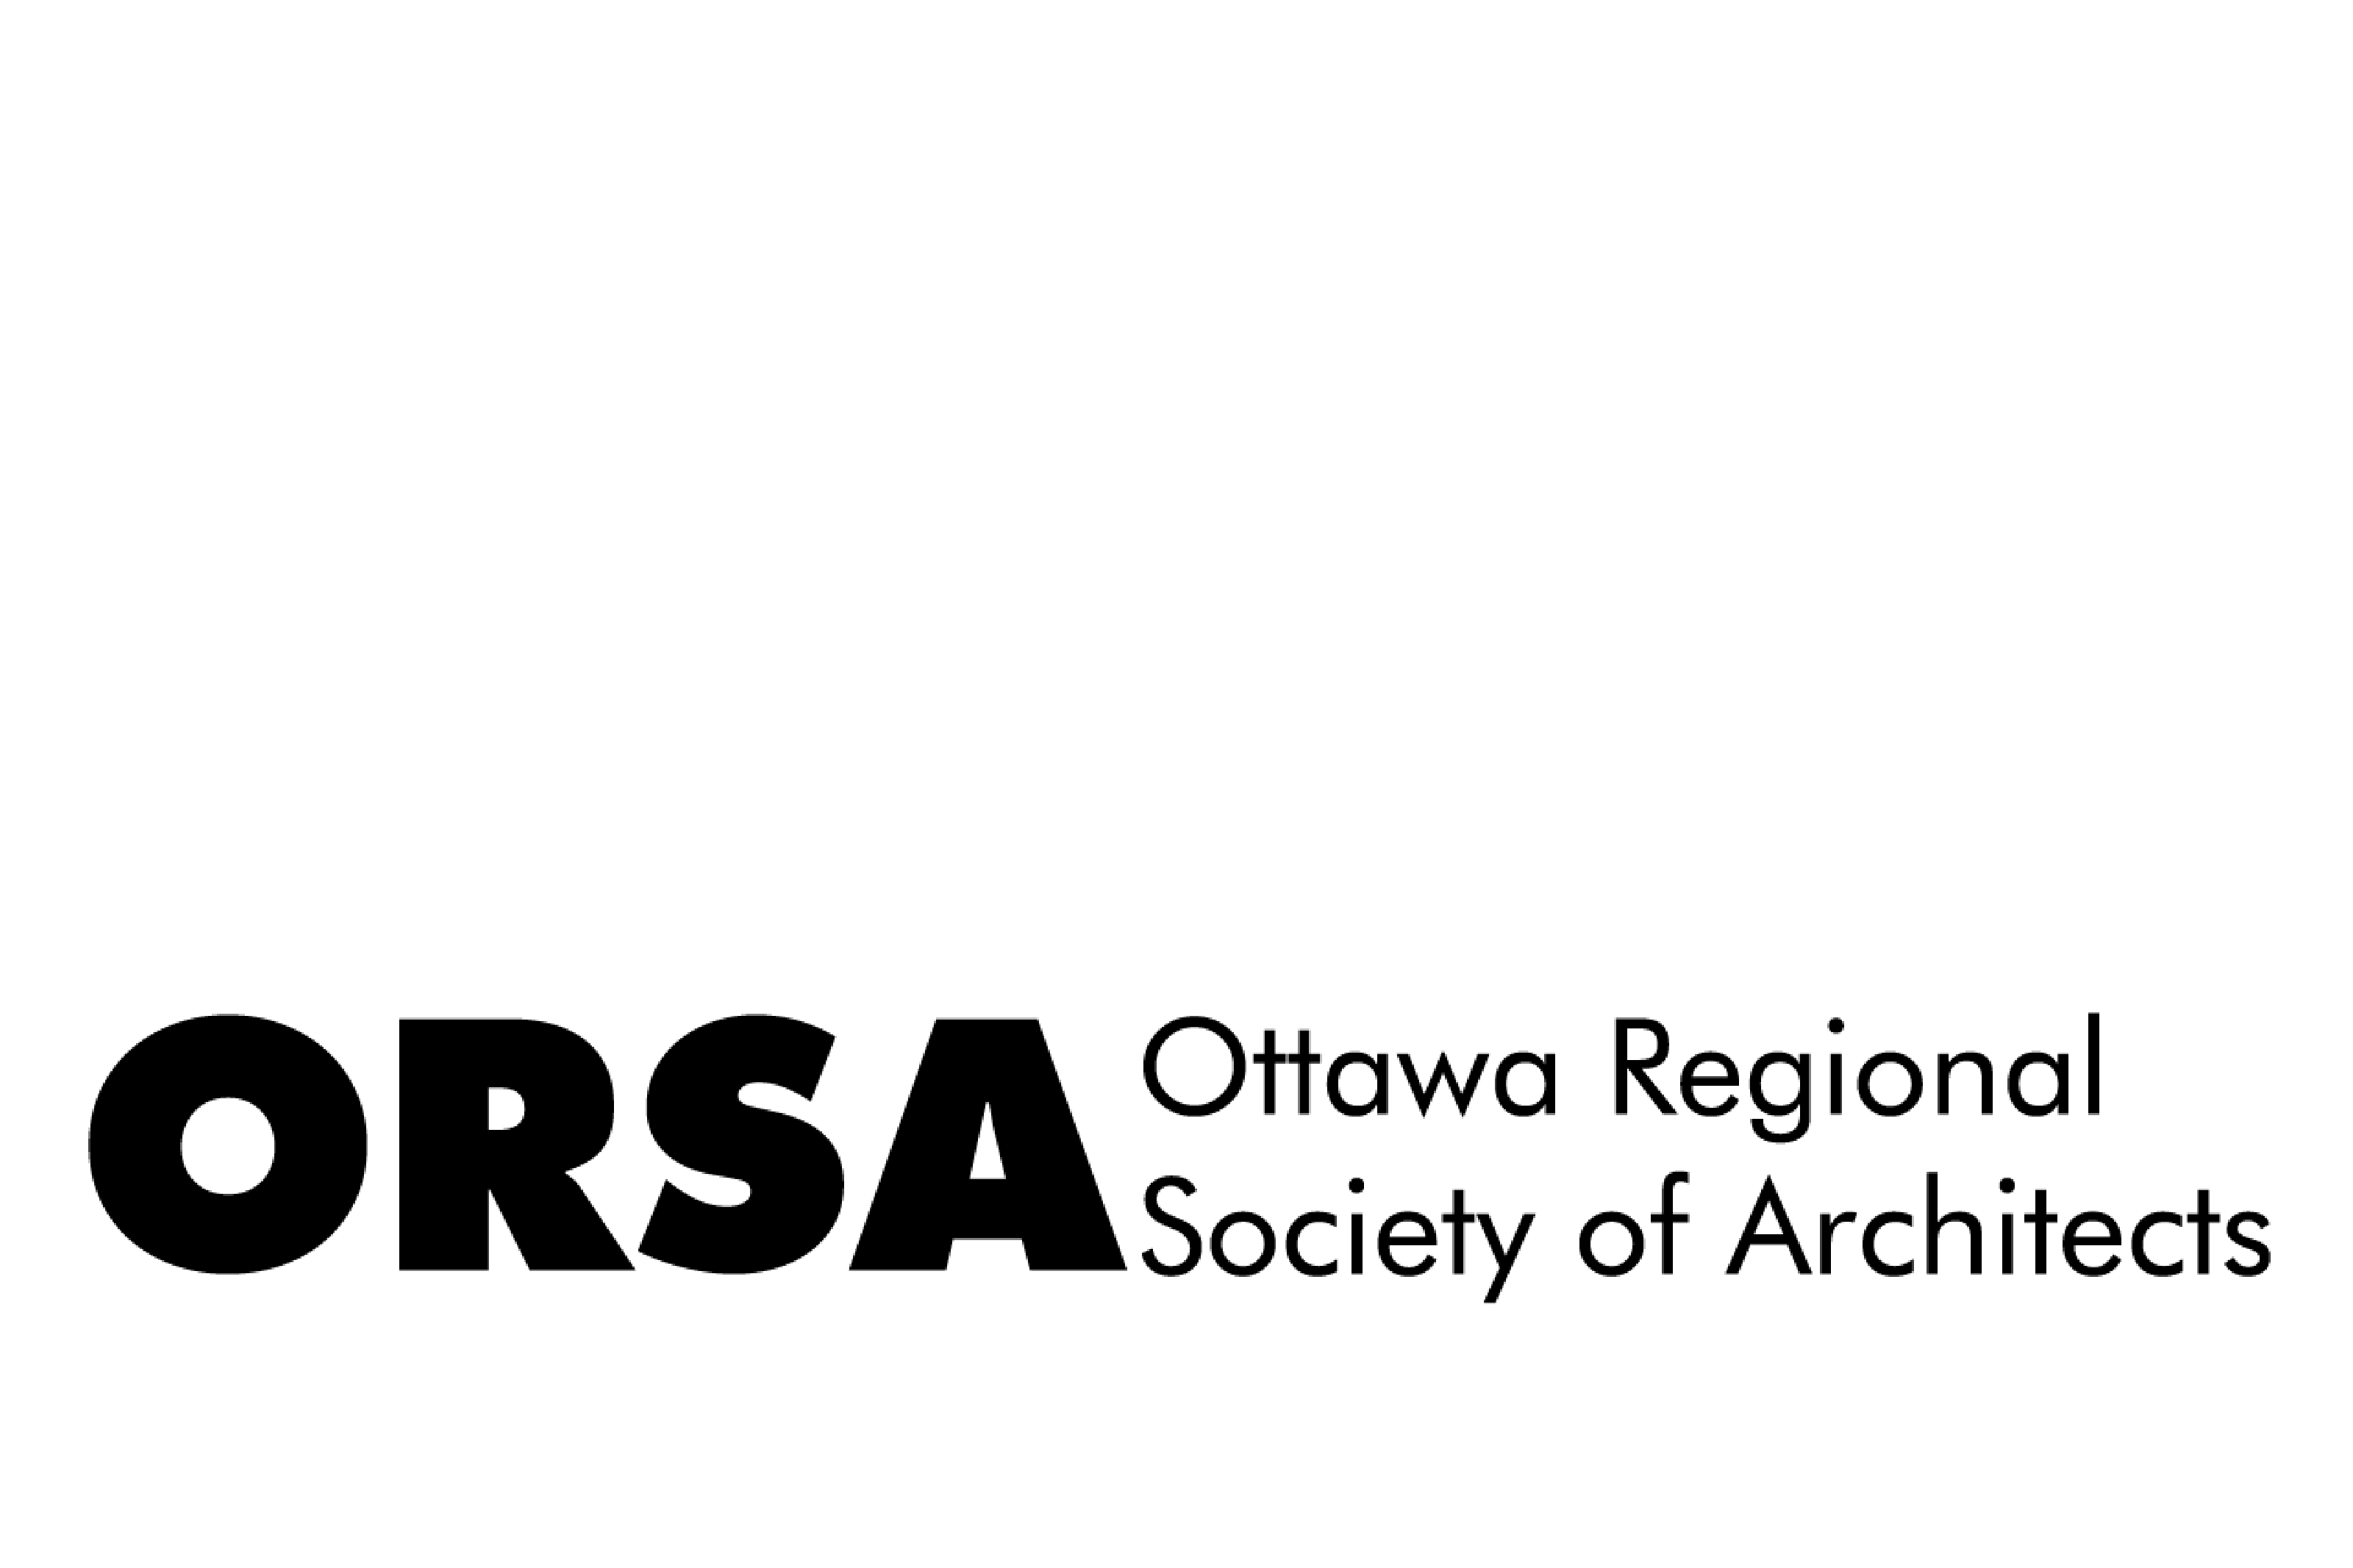 Ottawa Regional Society of Architects